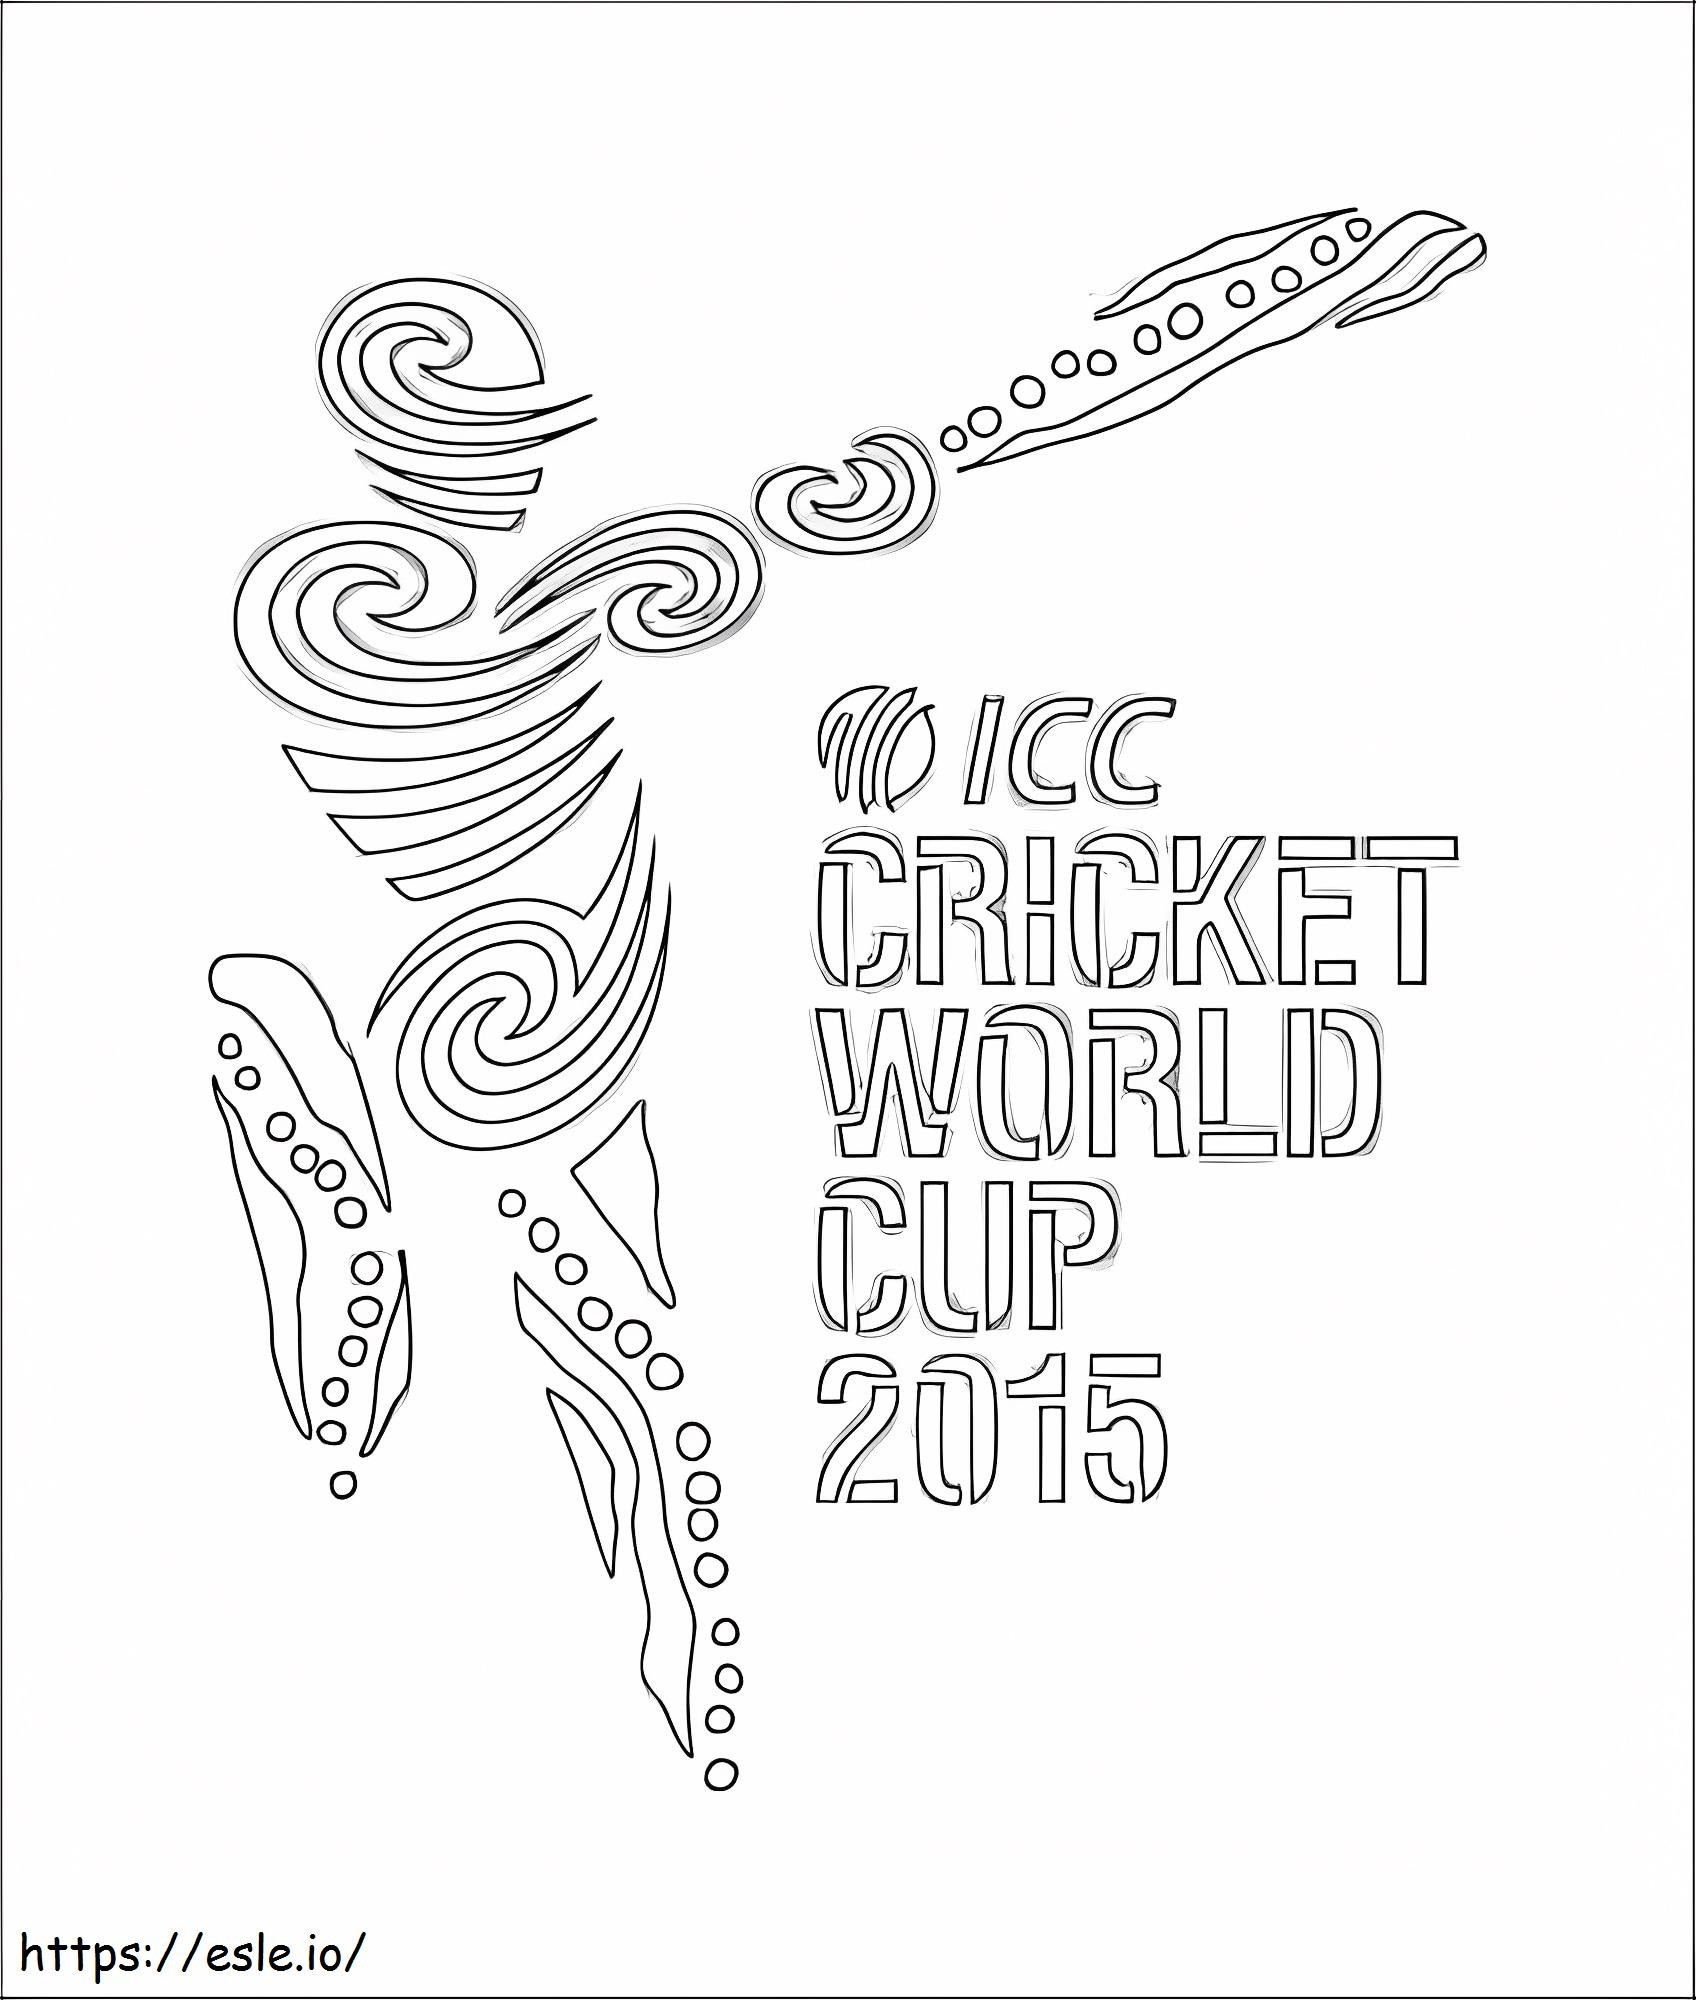 Kriket Dünya Kupası 2015 boyama